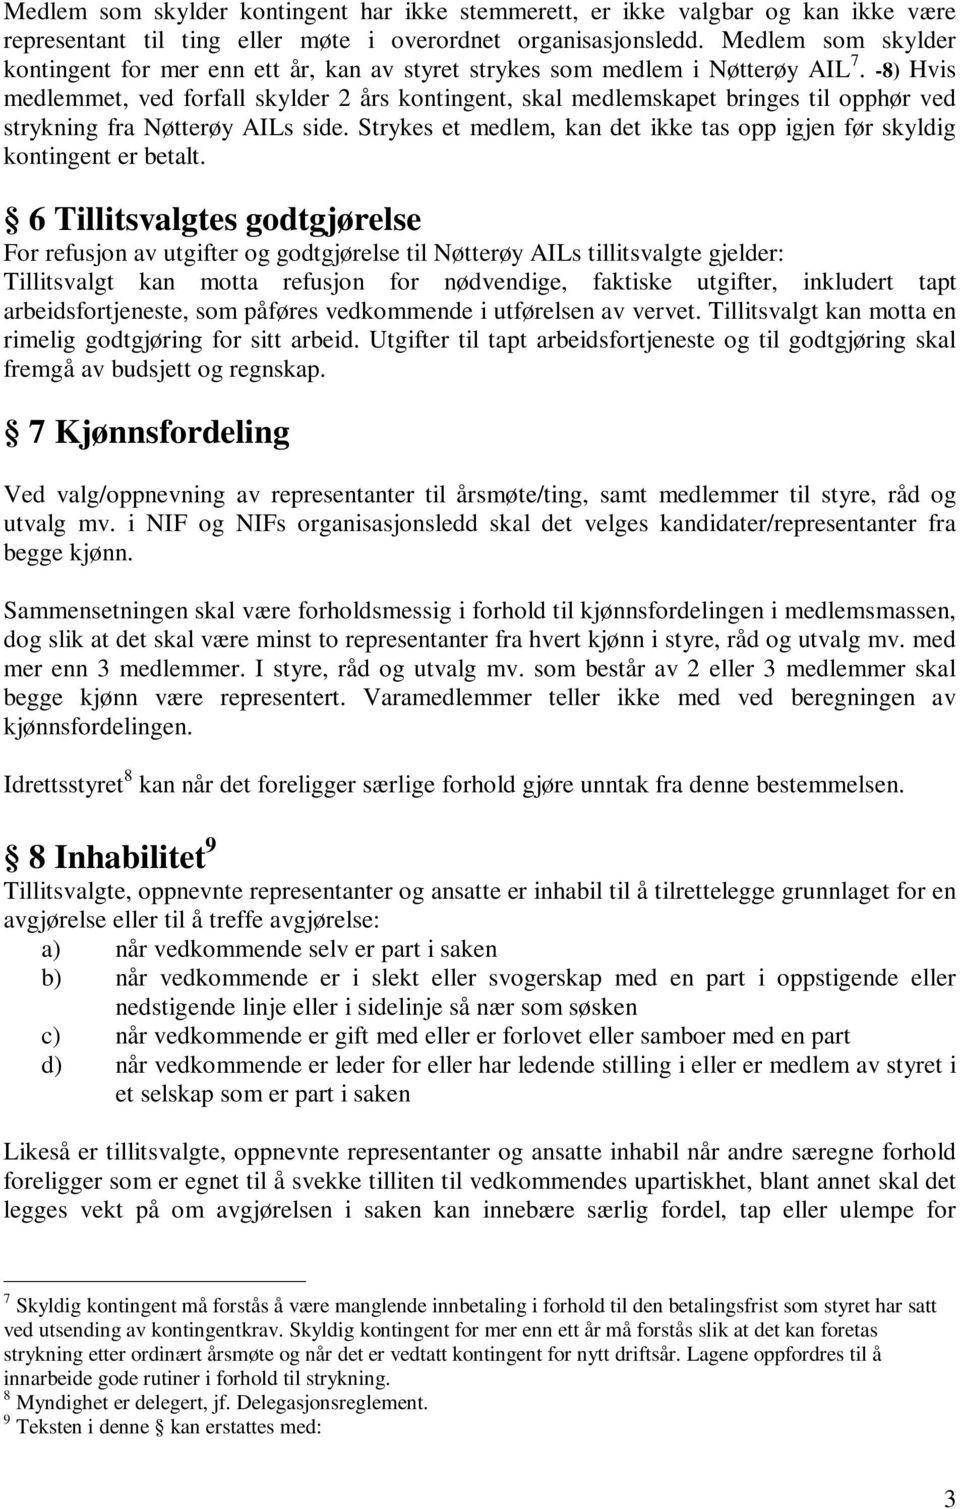 -8) Hvis medlemmet, ved forfall skylder 2 års kontingent, skal medlemskapet bringes til opphør ved strykning fra Nøtterøy AILs side.